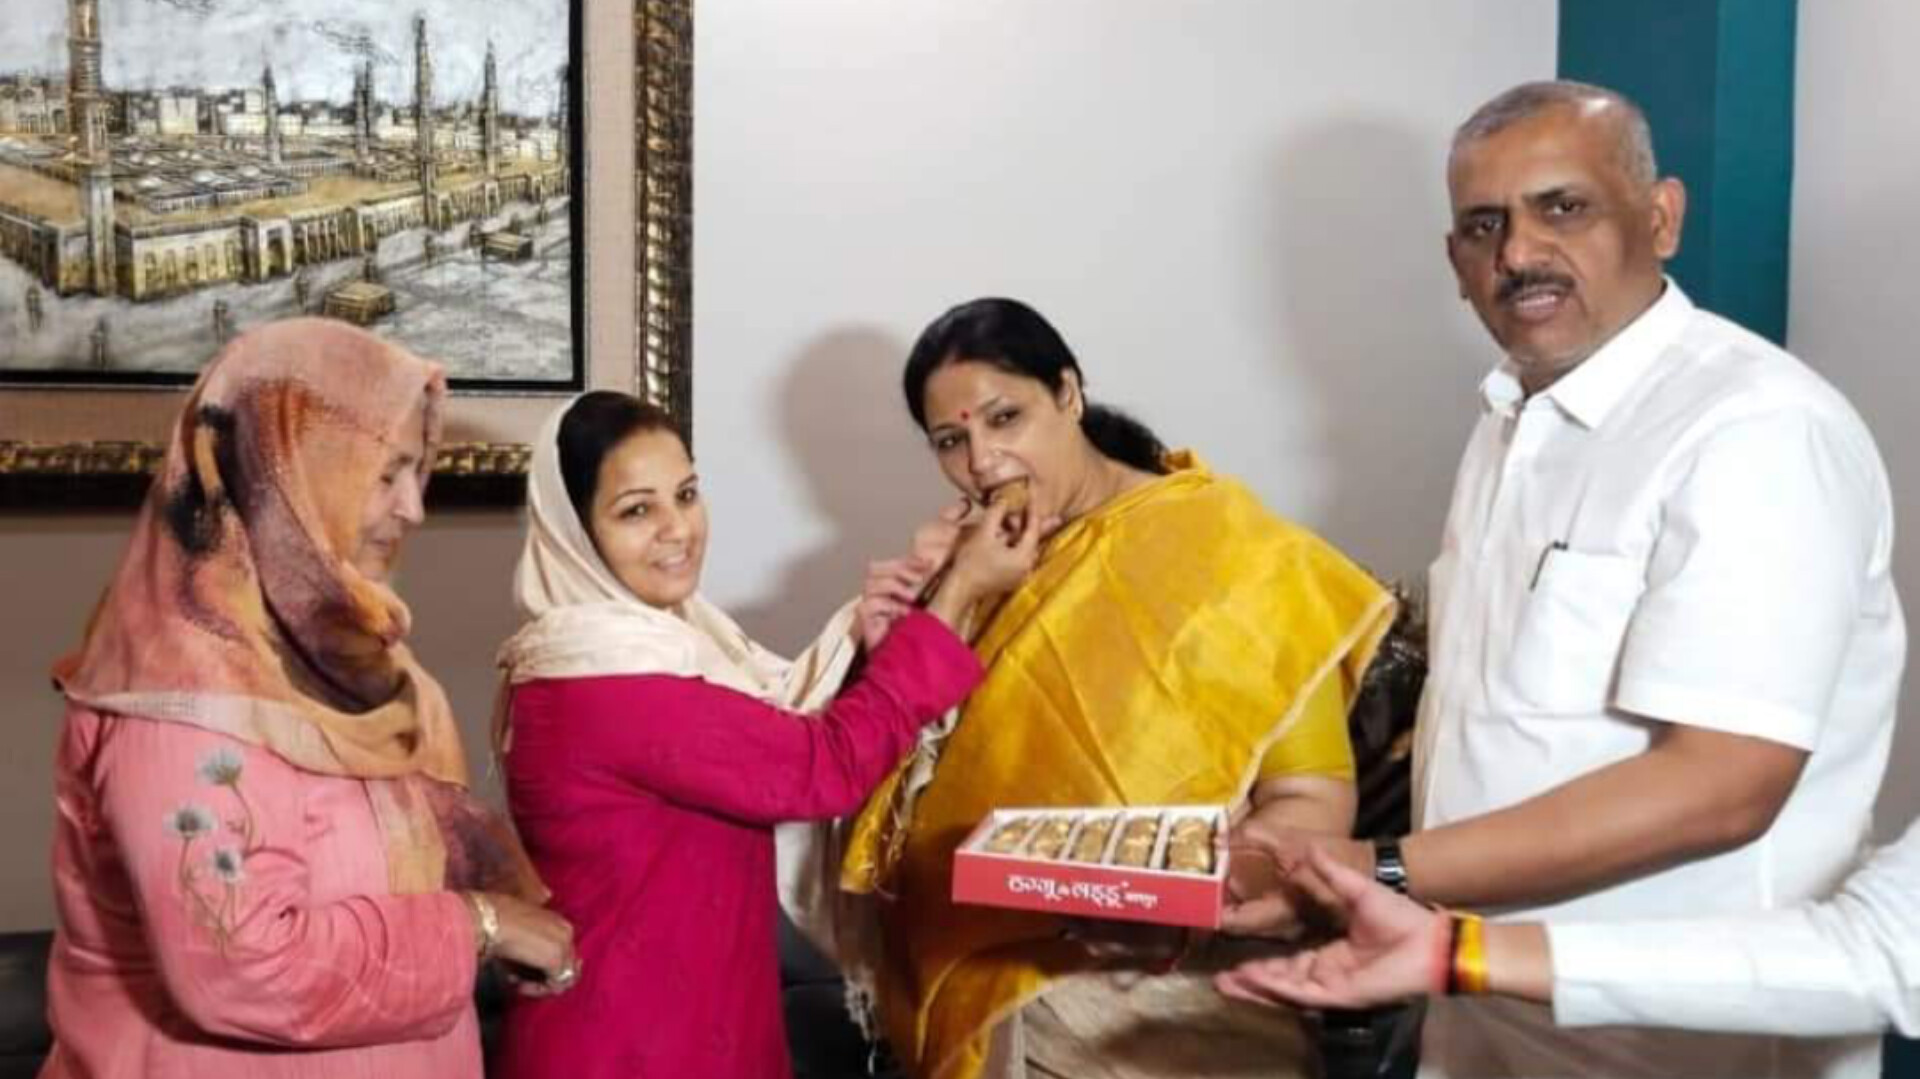 Kanpur News: विधायक इरफान की पत्नी बोली, पार्टी का अच्छा फैसला,भाभी के लिए
करूंगी प्रचार